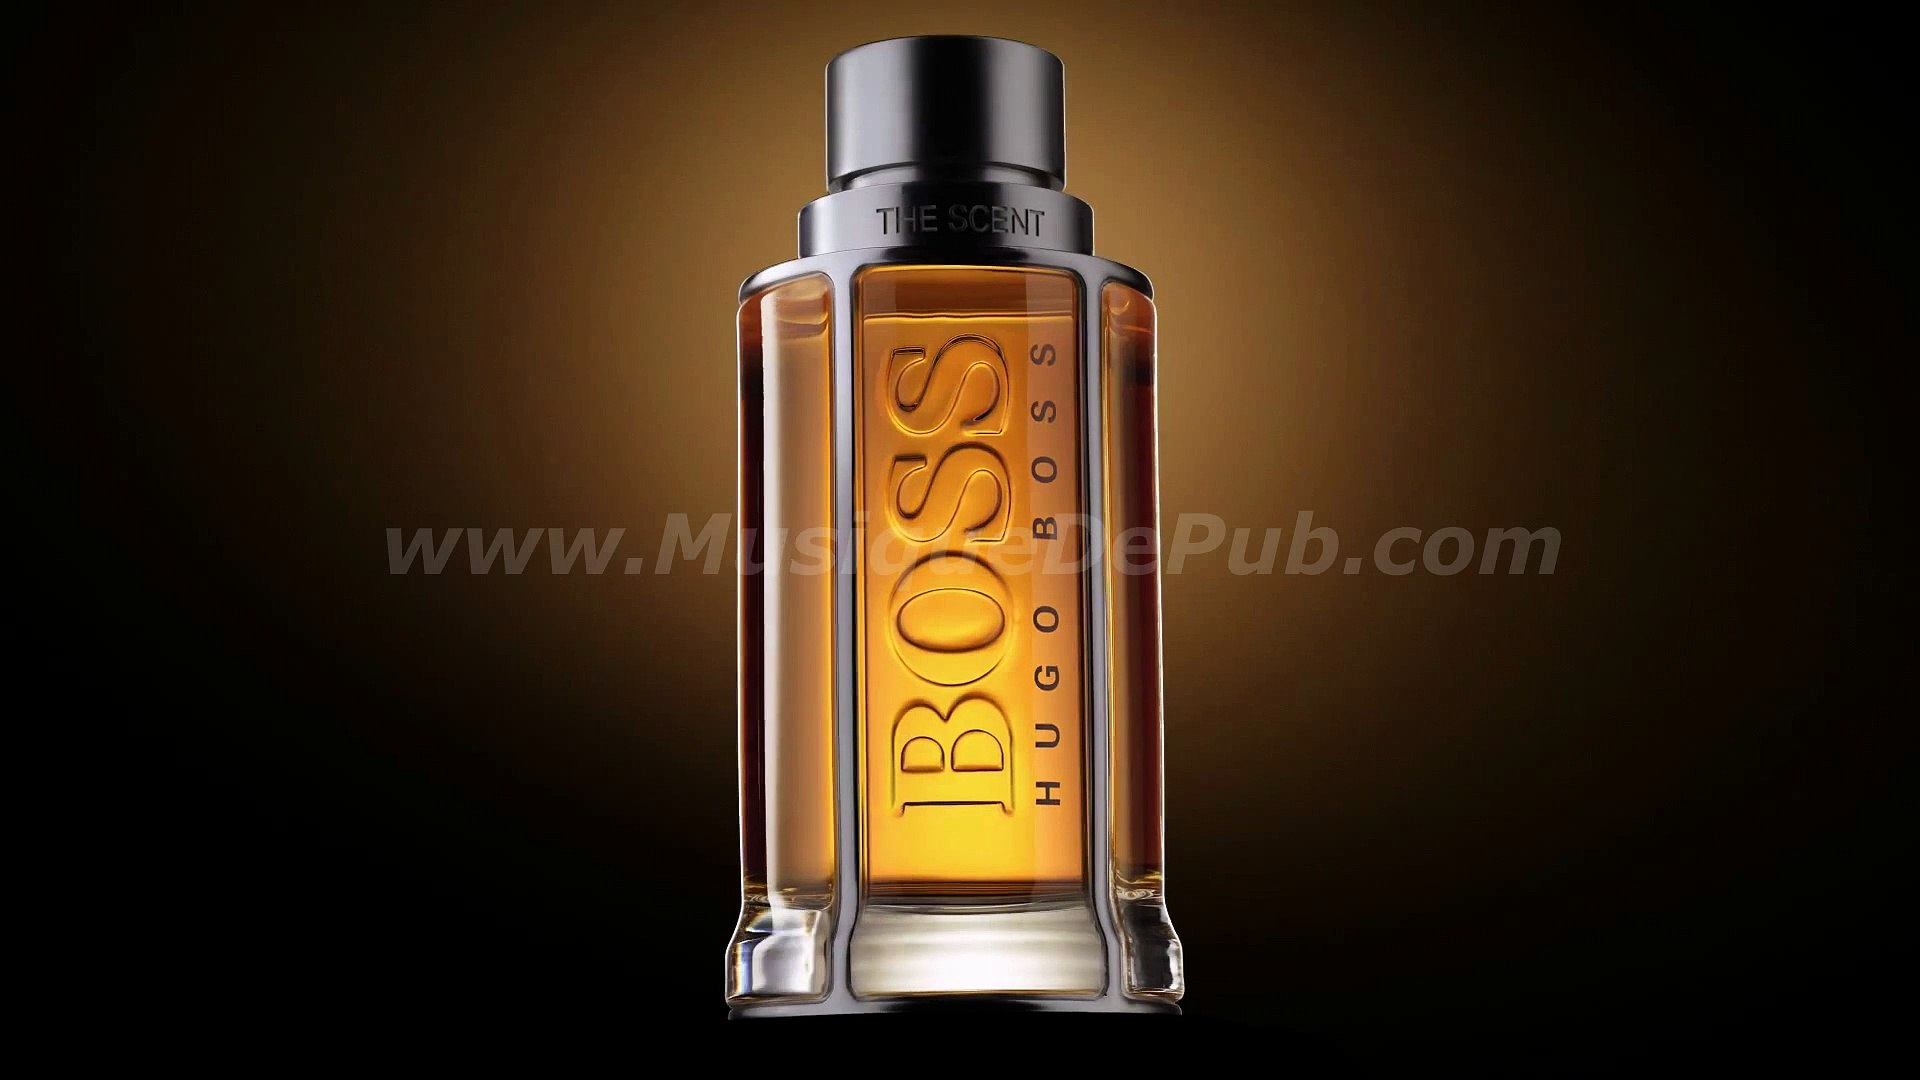 doğrusal kaçakçılık sorun Sanatçı İddiasız Enlighten pub parfum hugo boss  femme - lastminutemontenegro.com